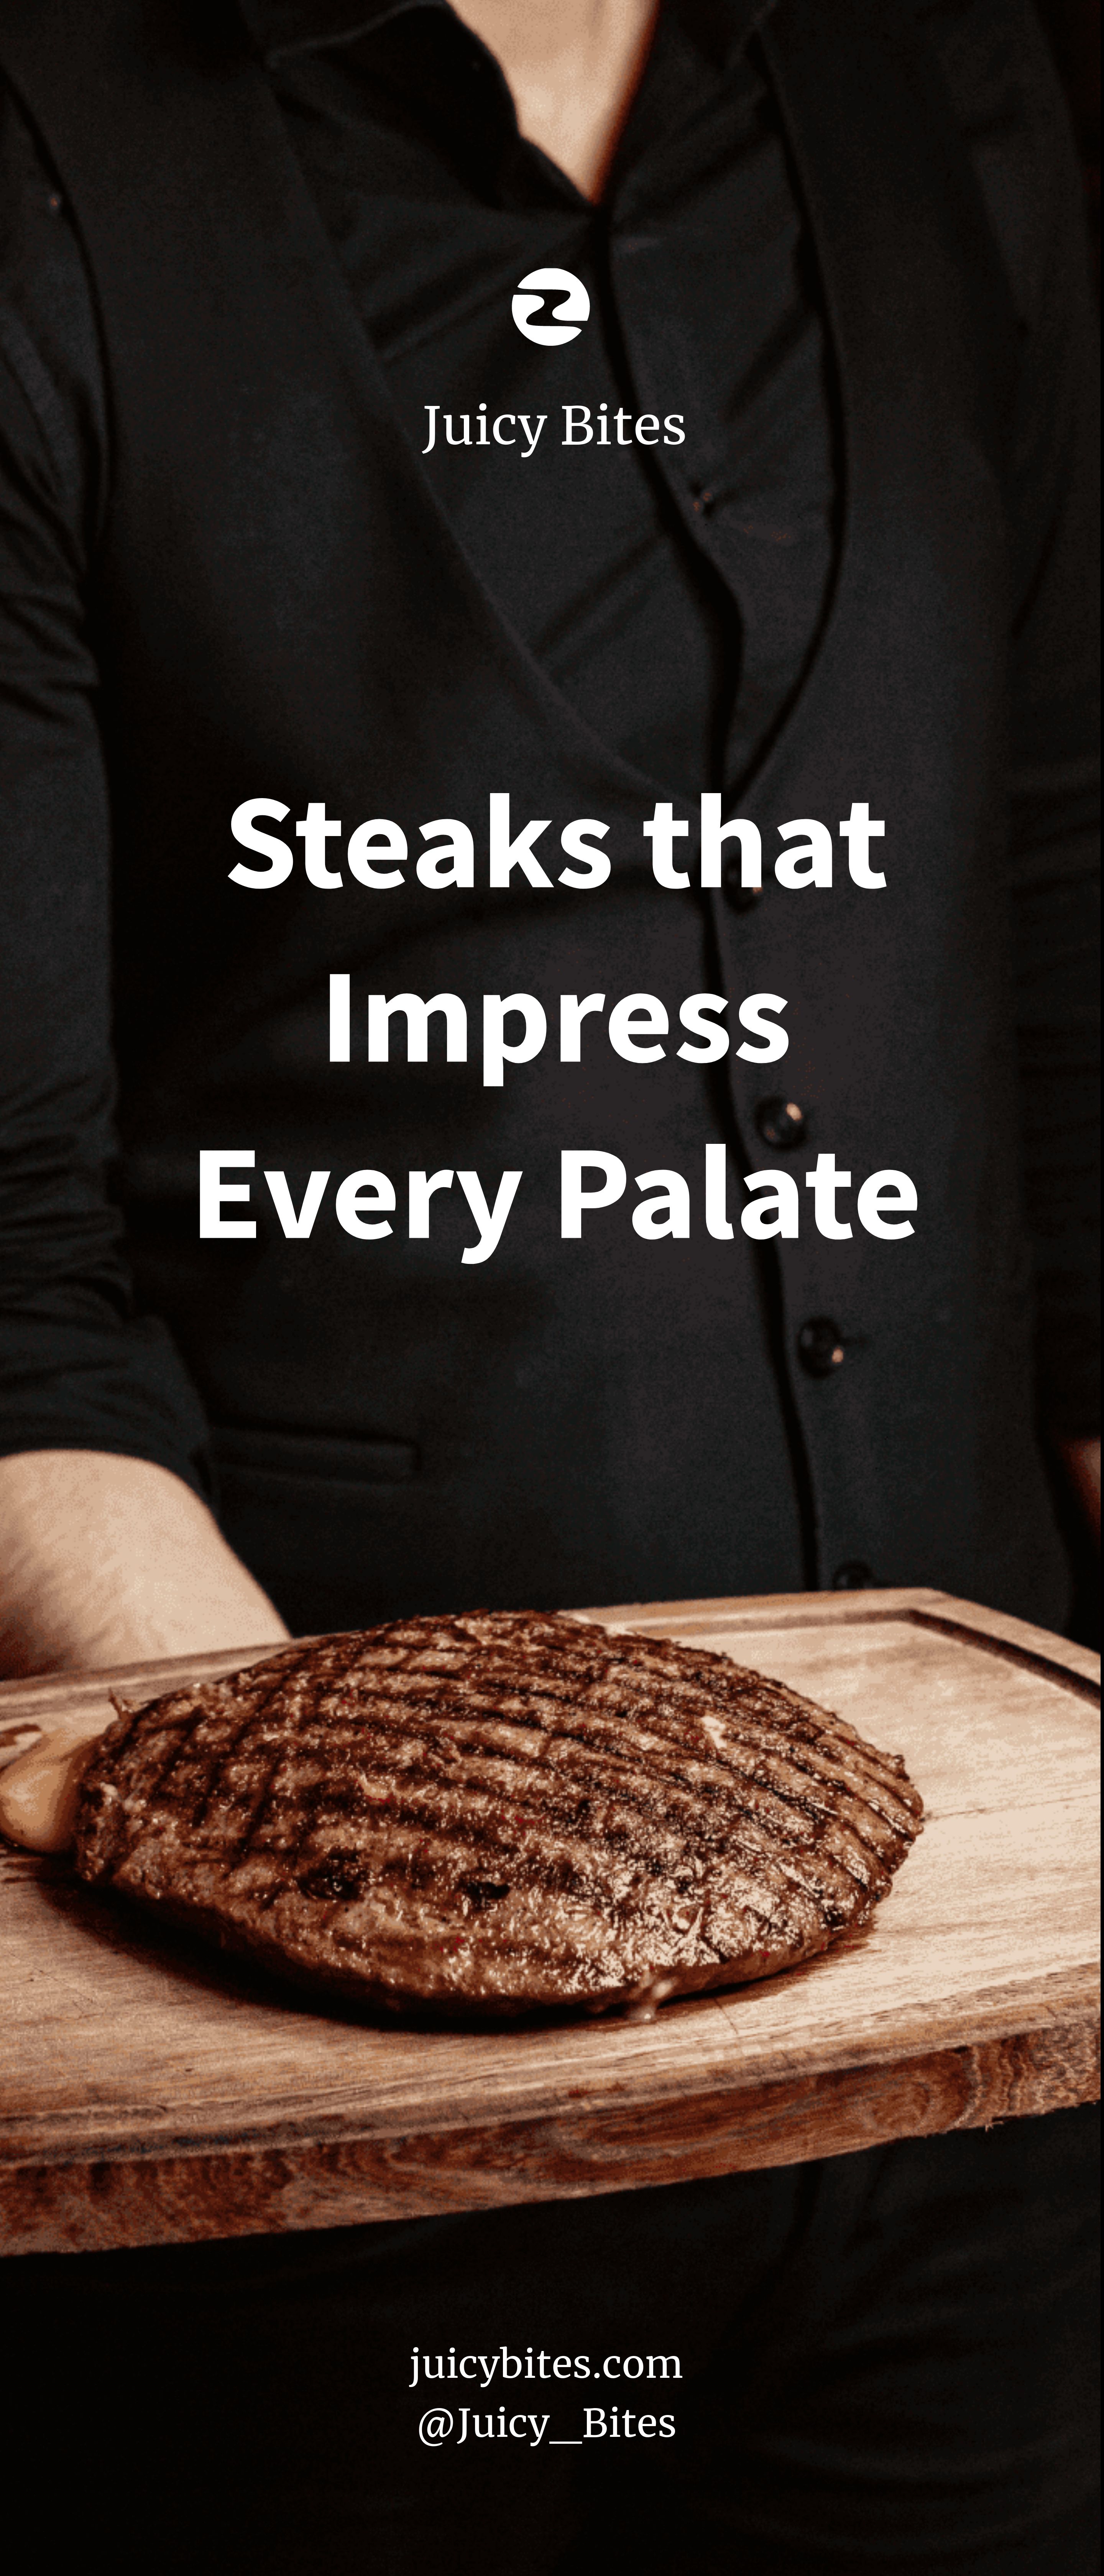 steak-roll-up-banner-template